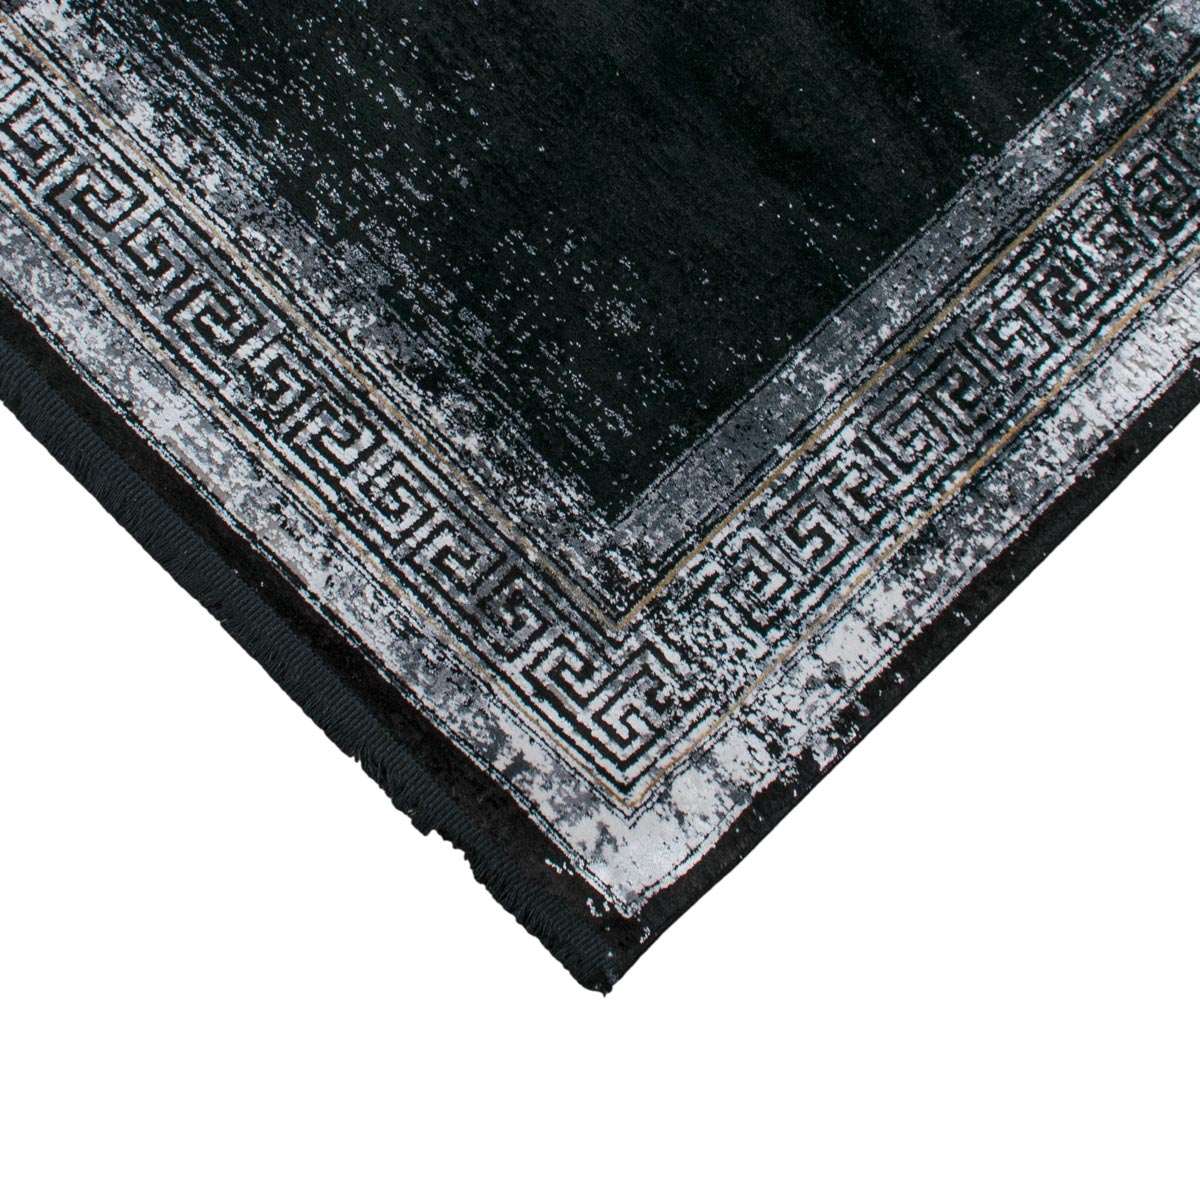 שטיח ג'איפור 11 שחור/אפור עם פרנזים | השטיח האדום